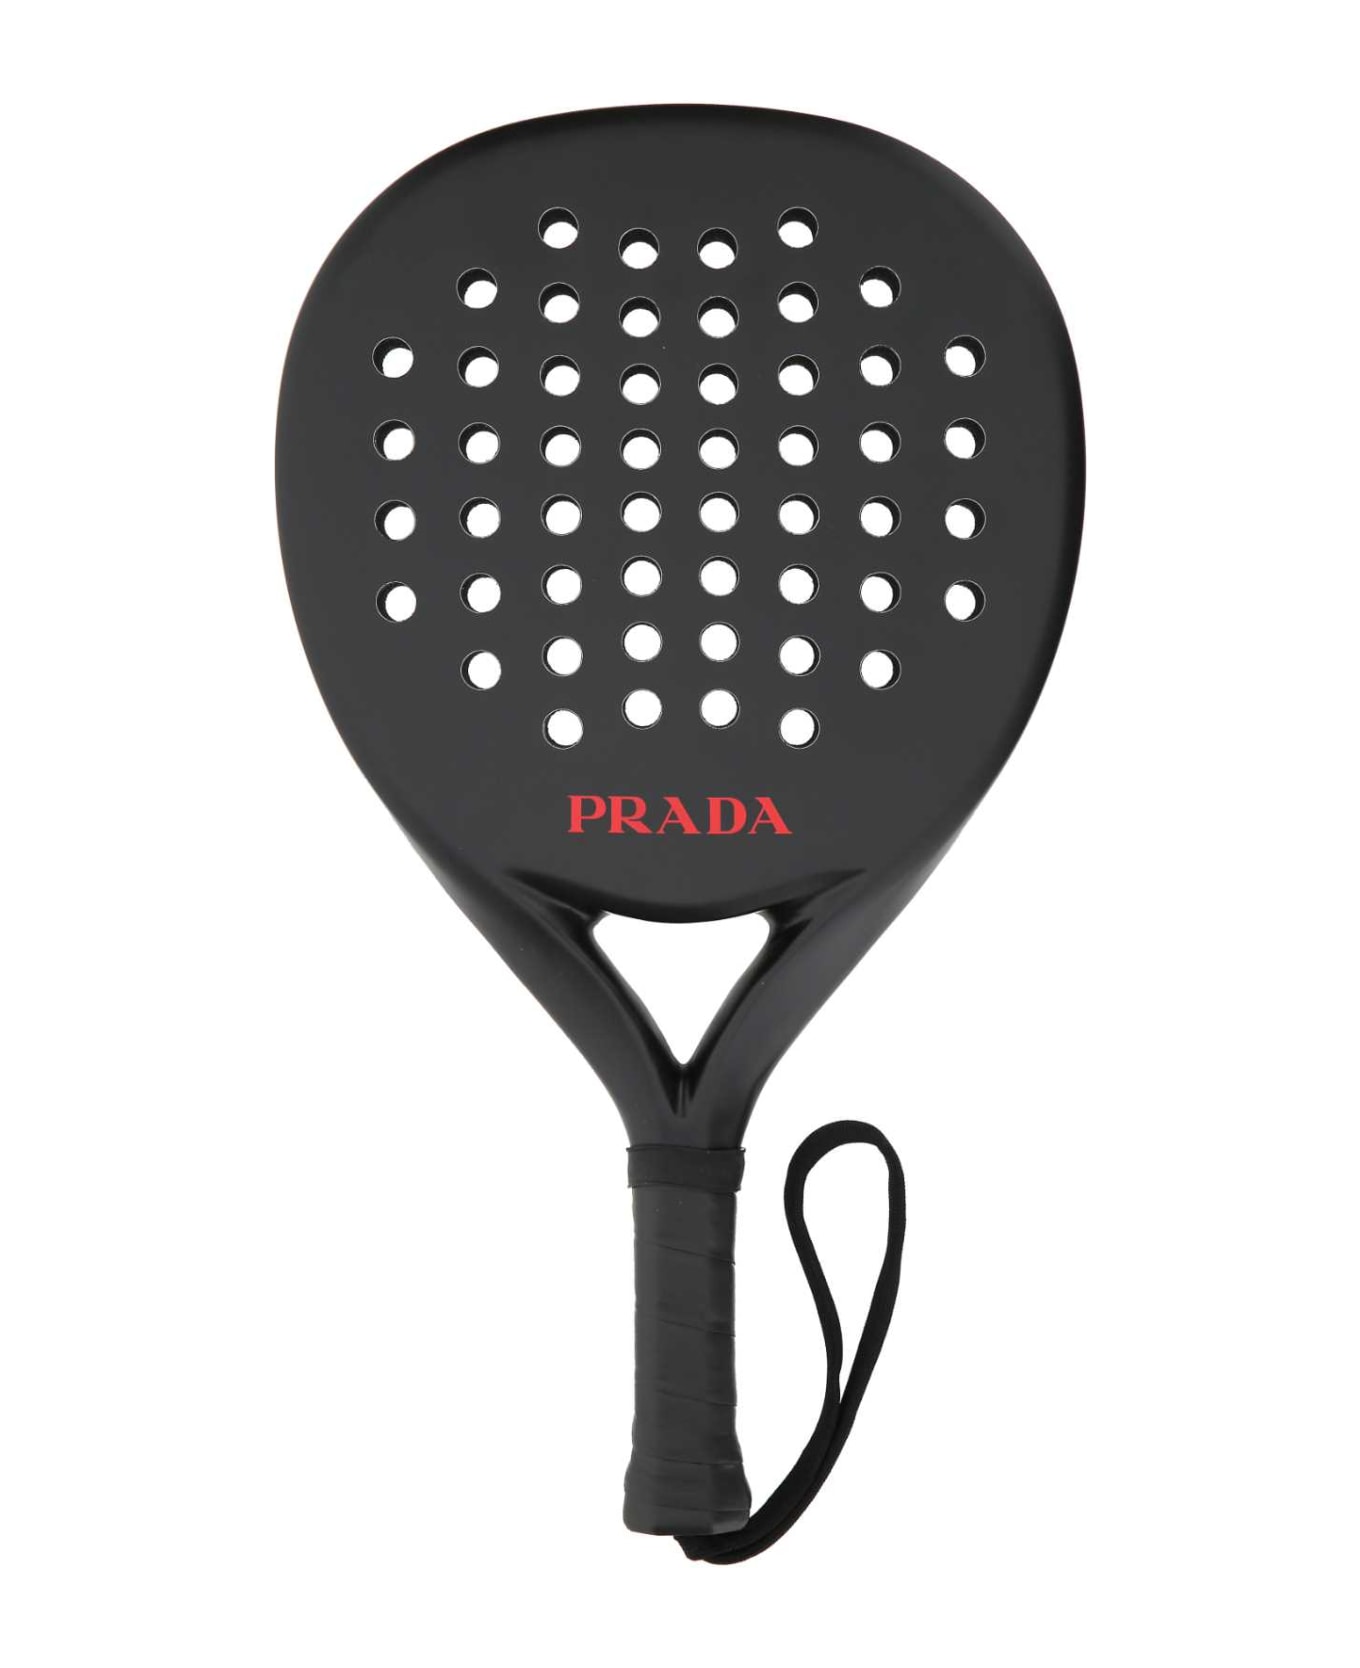 Prada Paddle Racket - F0002 インテリア雑貨